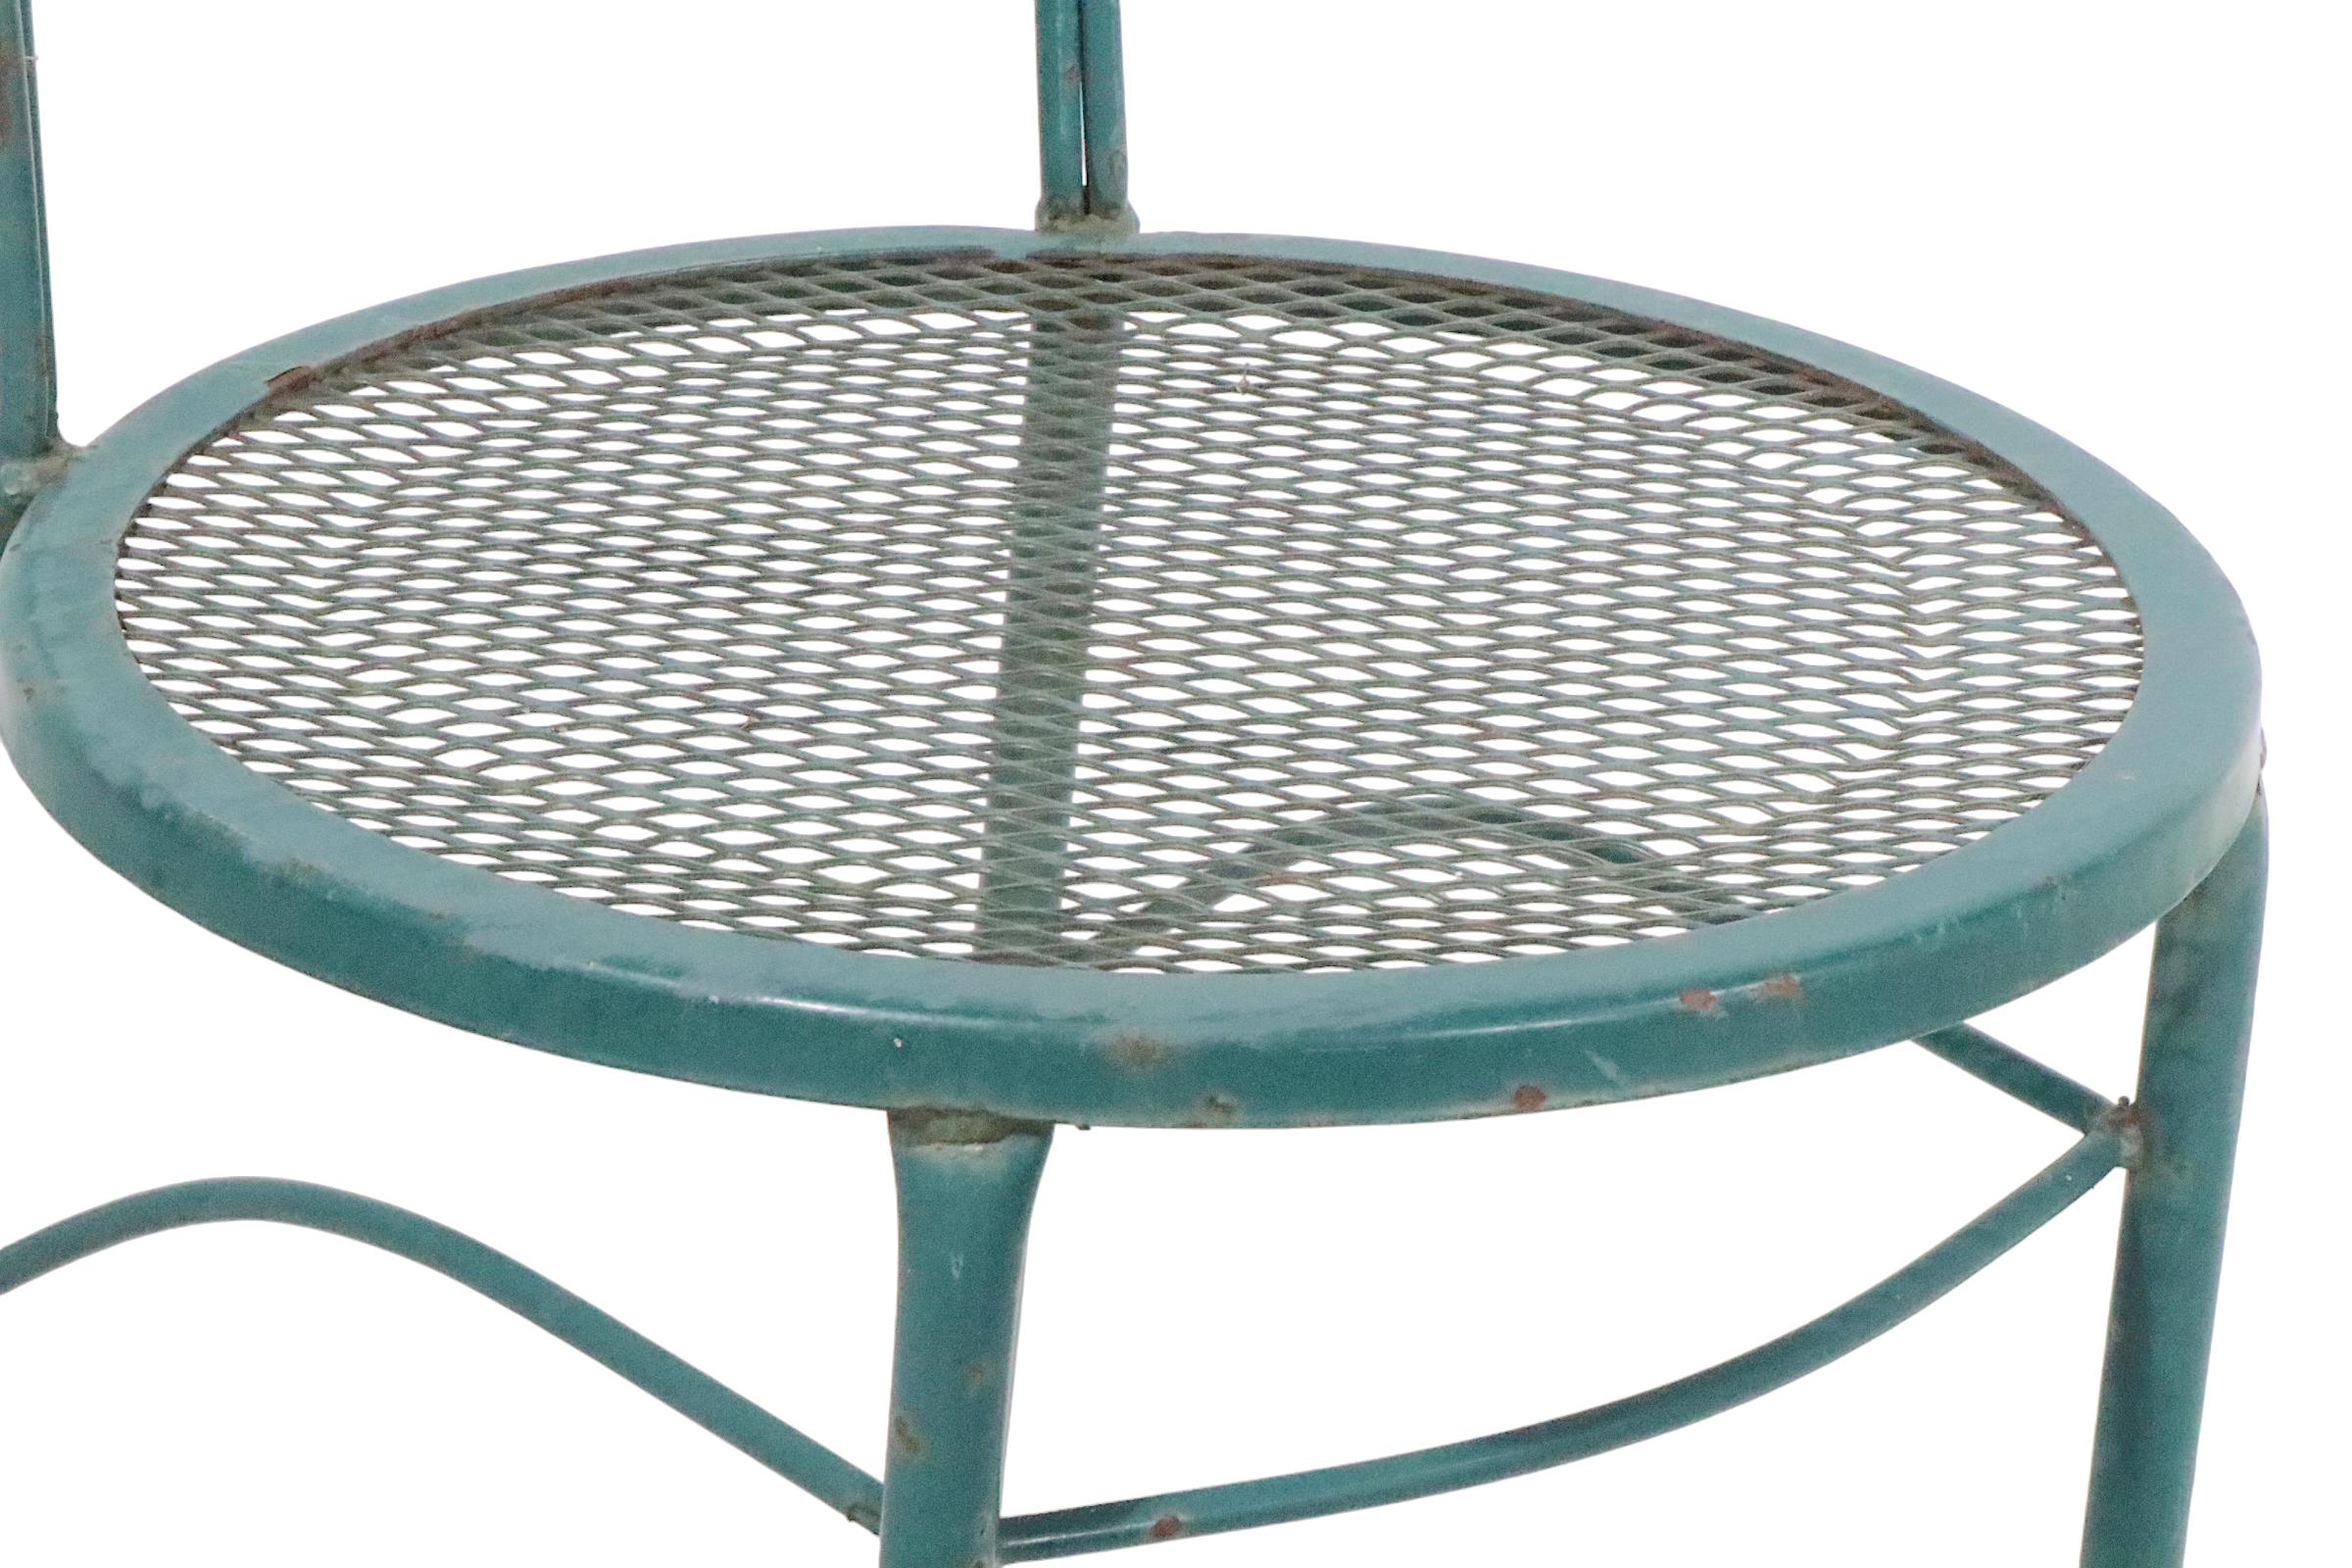 Paire de chaises de jardin, de patio ou de piscine en fer forgé, en métal et en maille métallique, super chic et voguish. Les chaises sont dotées d'un  dossier tubulaire, cadre en fer forgé et sièges en maille métallique. Les deux chaises sont